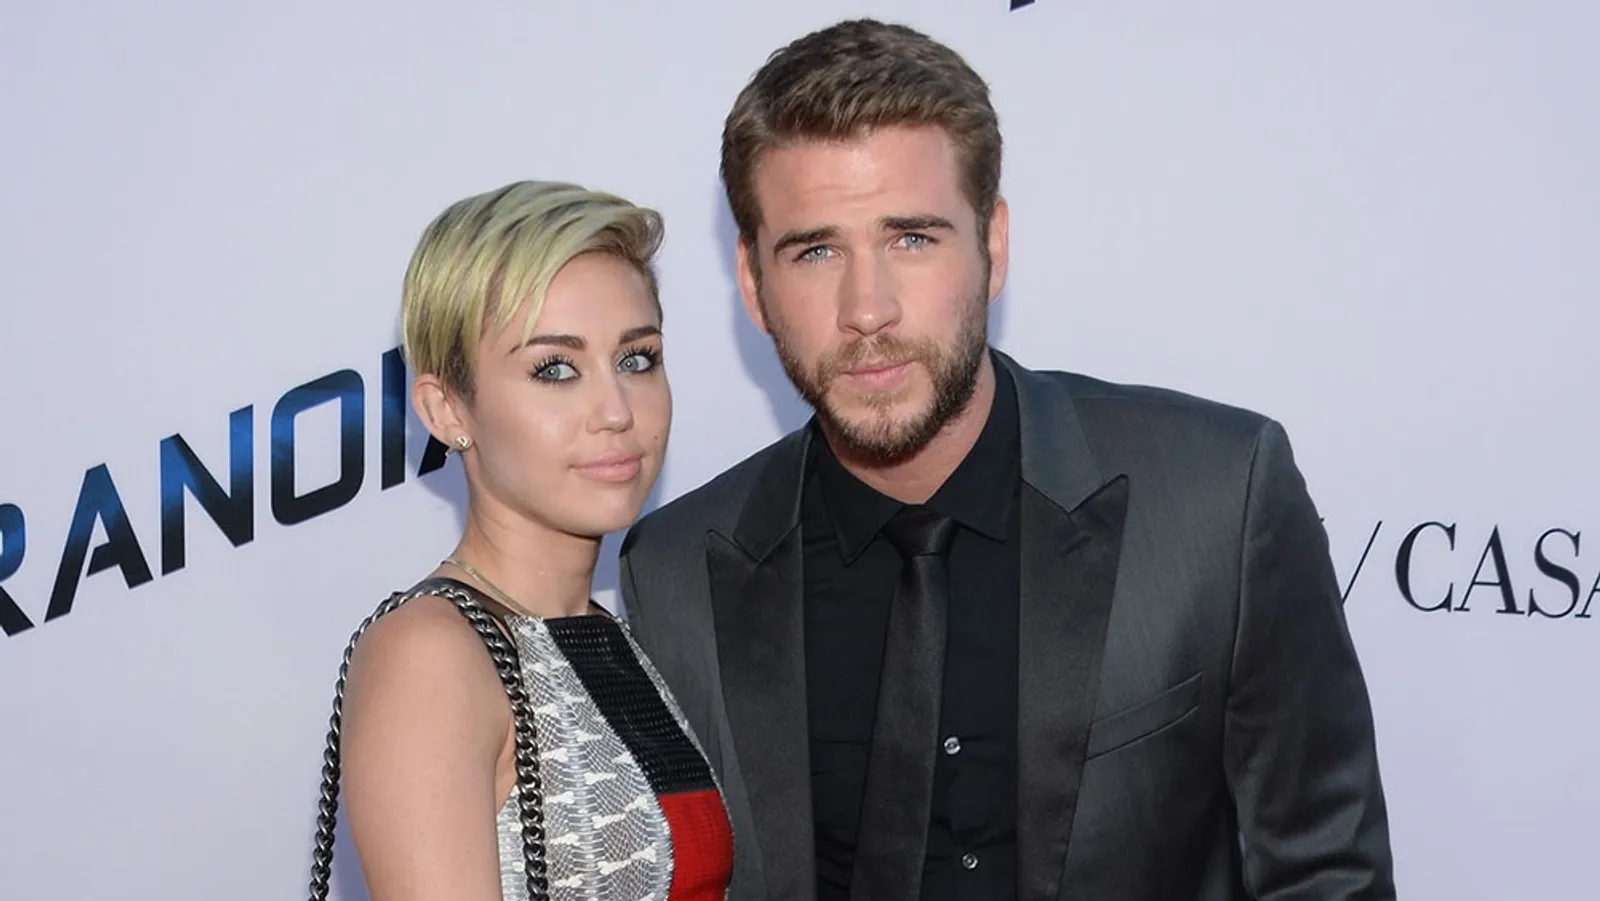 Simak Kemesraan Miley Cyrus dan Liam Hemsworth di Instagram